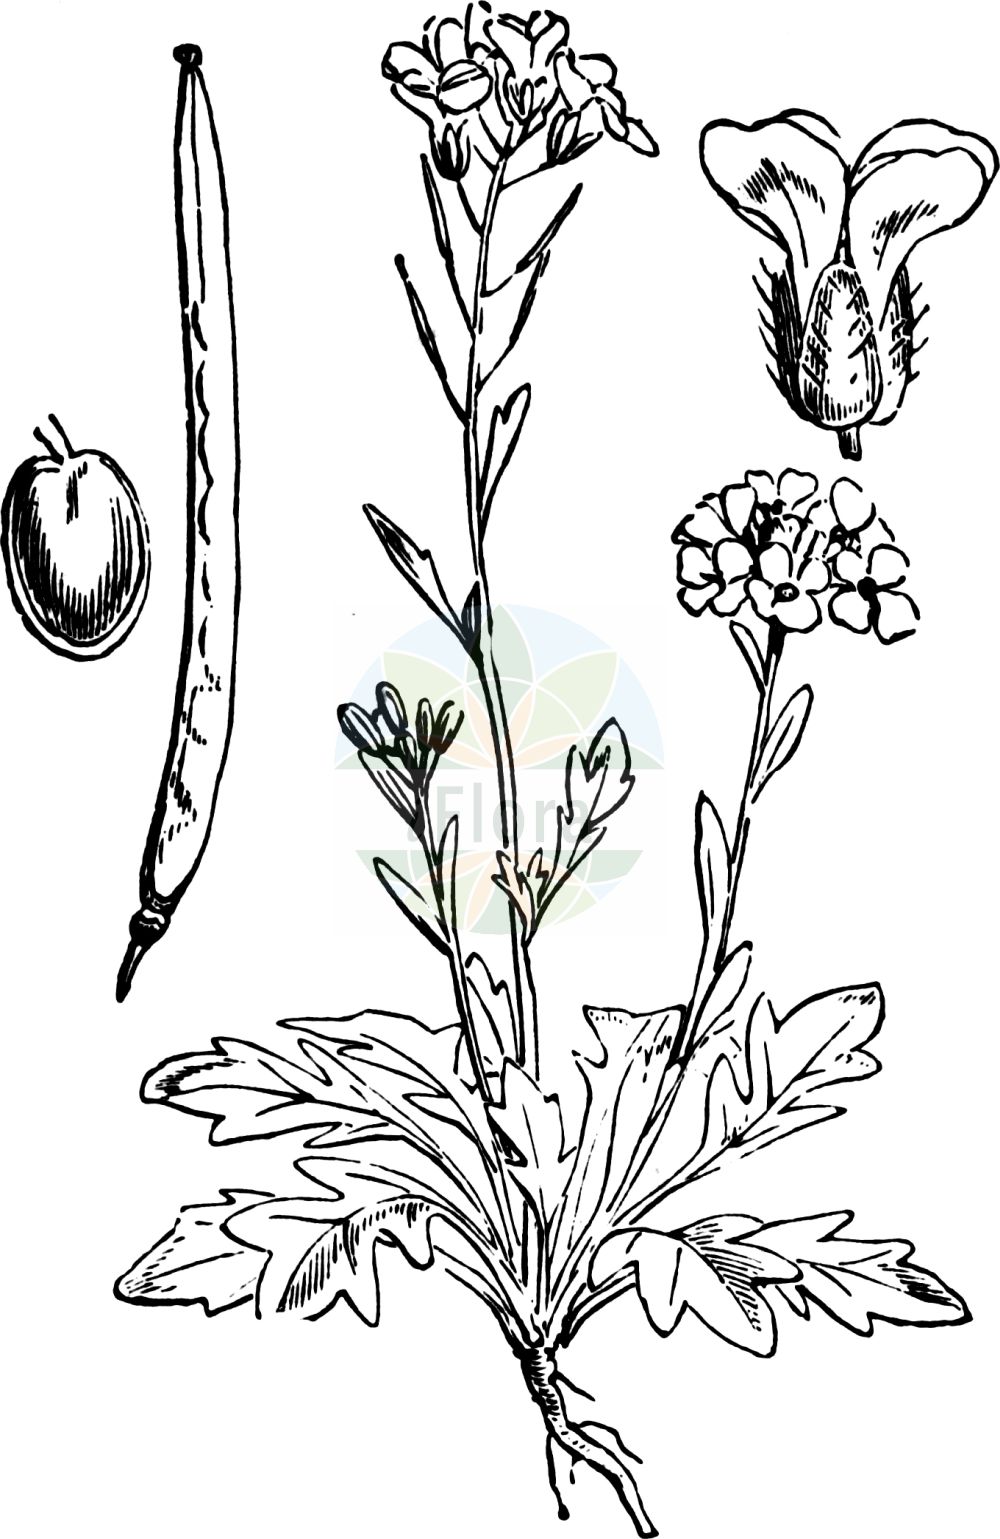 Historische Abbildung von Arabidopsis petraea (Felsen-Schmalwand - Lyrate Rockcress). Das Bild zeigt Blatt, Bluete, Frucht und Same. ---- Historical Drawing of Arabidopsis petraea (Felsen-Schmalwand - Lyrate Rockcress). The image is showing leaf, flower, fruit and seed.(Arabidopsis petraea,Felsen-Schmalwand,Lyrate Rockcress,Arabidopsis petraea,Arabis petraea,Arabis septentrionalis,Cardamine petraea,Cardaminopsis hispida,Cardaminopsis petraea,Cardaminopsis septentrionalis,Felsen-Schmalwand,Lyrate Rockcress,Arabidopsis,Schmalwand,Rockcress,Brassicaceae,Kreuzblütler,Cabbage family,Blatt,Bluete,Frucht,Same,leaf,flower,fruit,seed,Fitch et al. (1880))